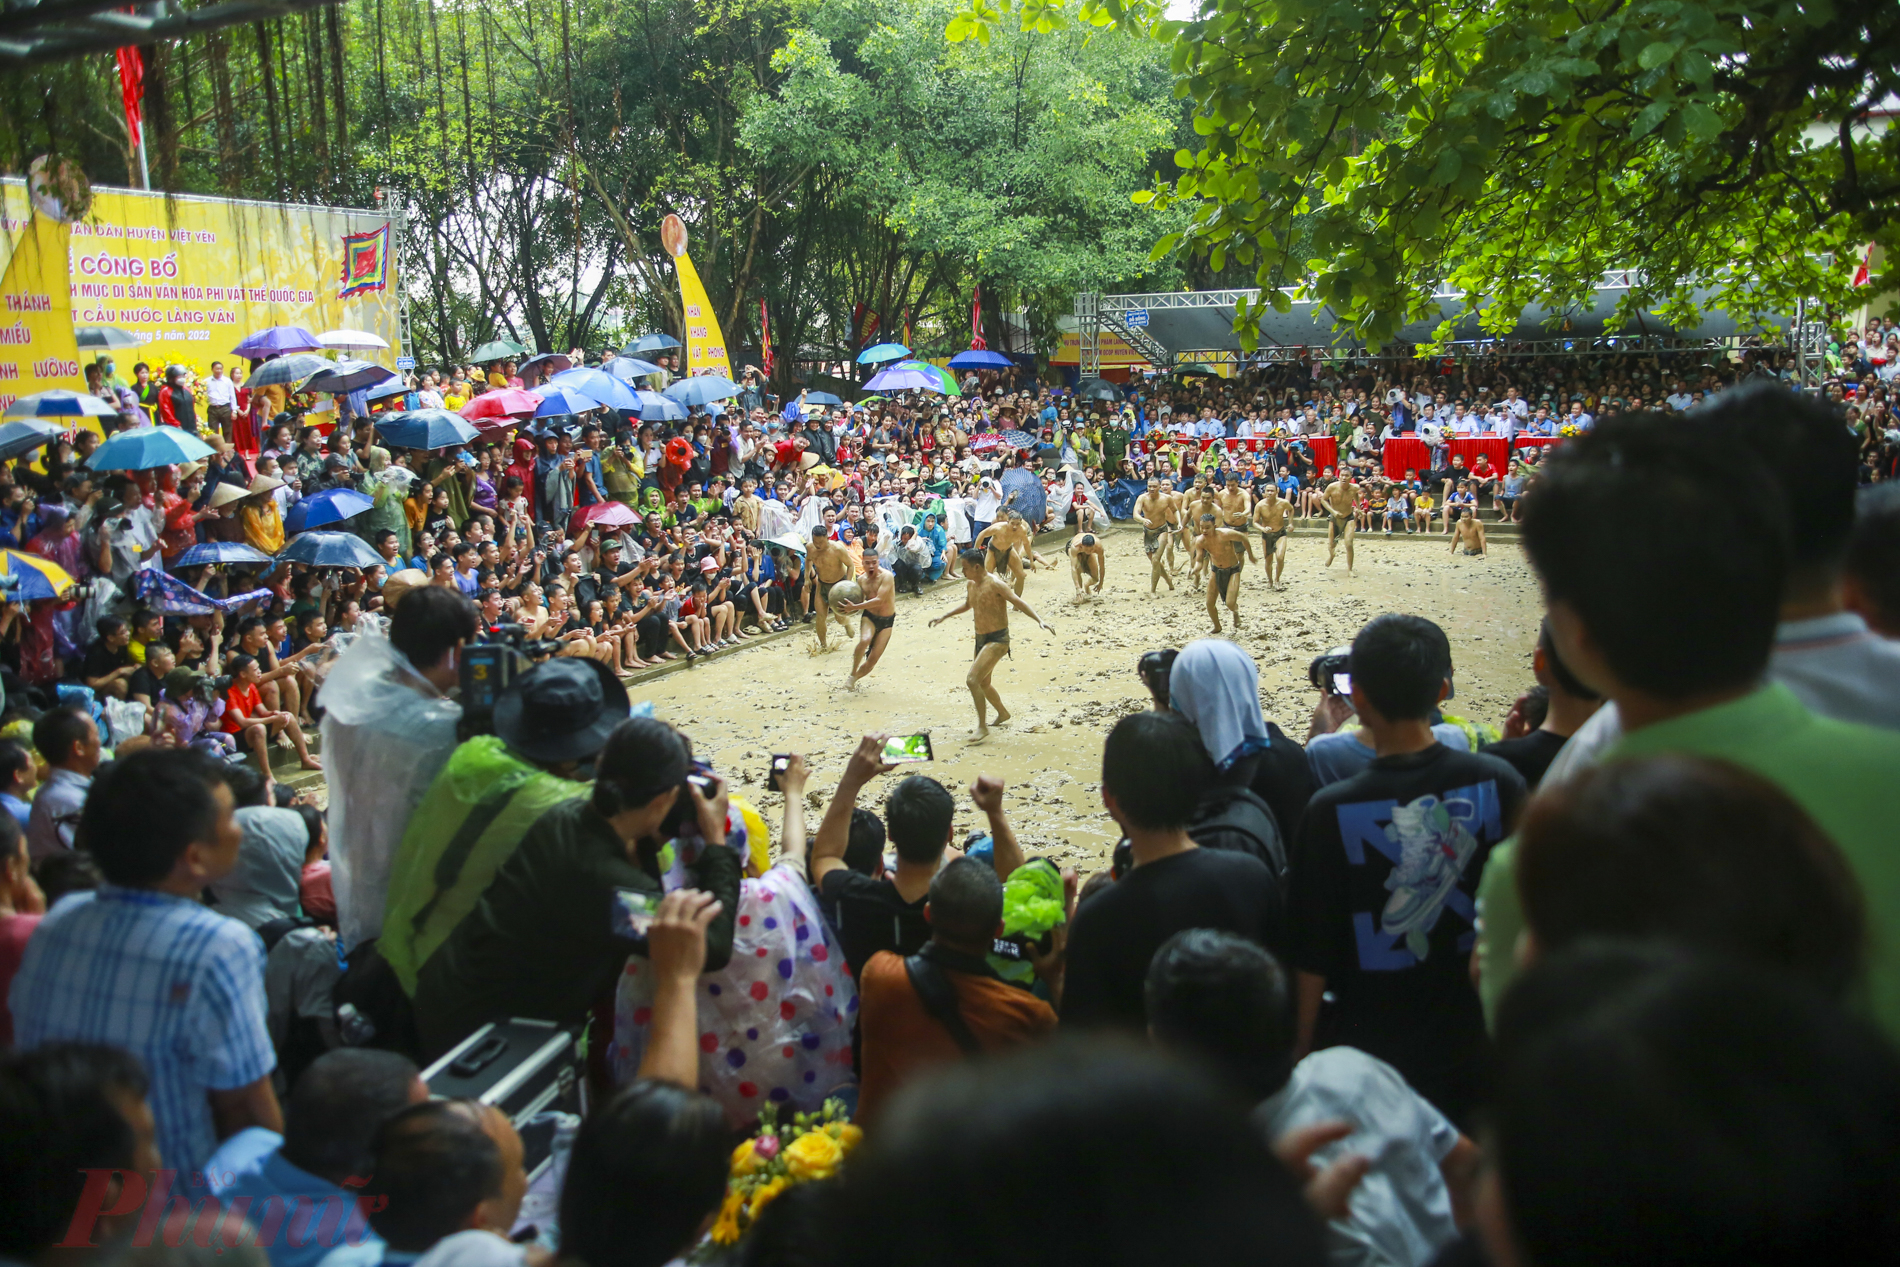 Năm nay, lễ hội vật cầu nước làng Vân được tổ chức trong 3 ngày 12-14/4 âm lịch (tức ngày 12-14/5 dương lịch). Đây là lễ hội độc nhất vô nhị ở Việt Nam, 4 năm mới tổ chức một lần.